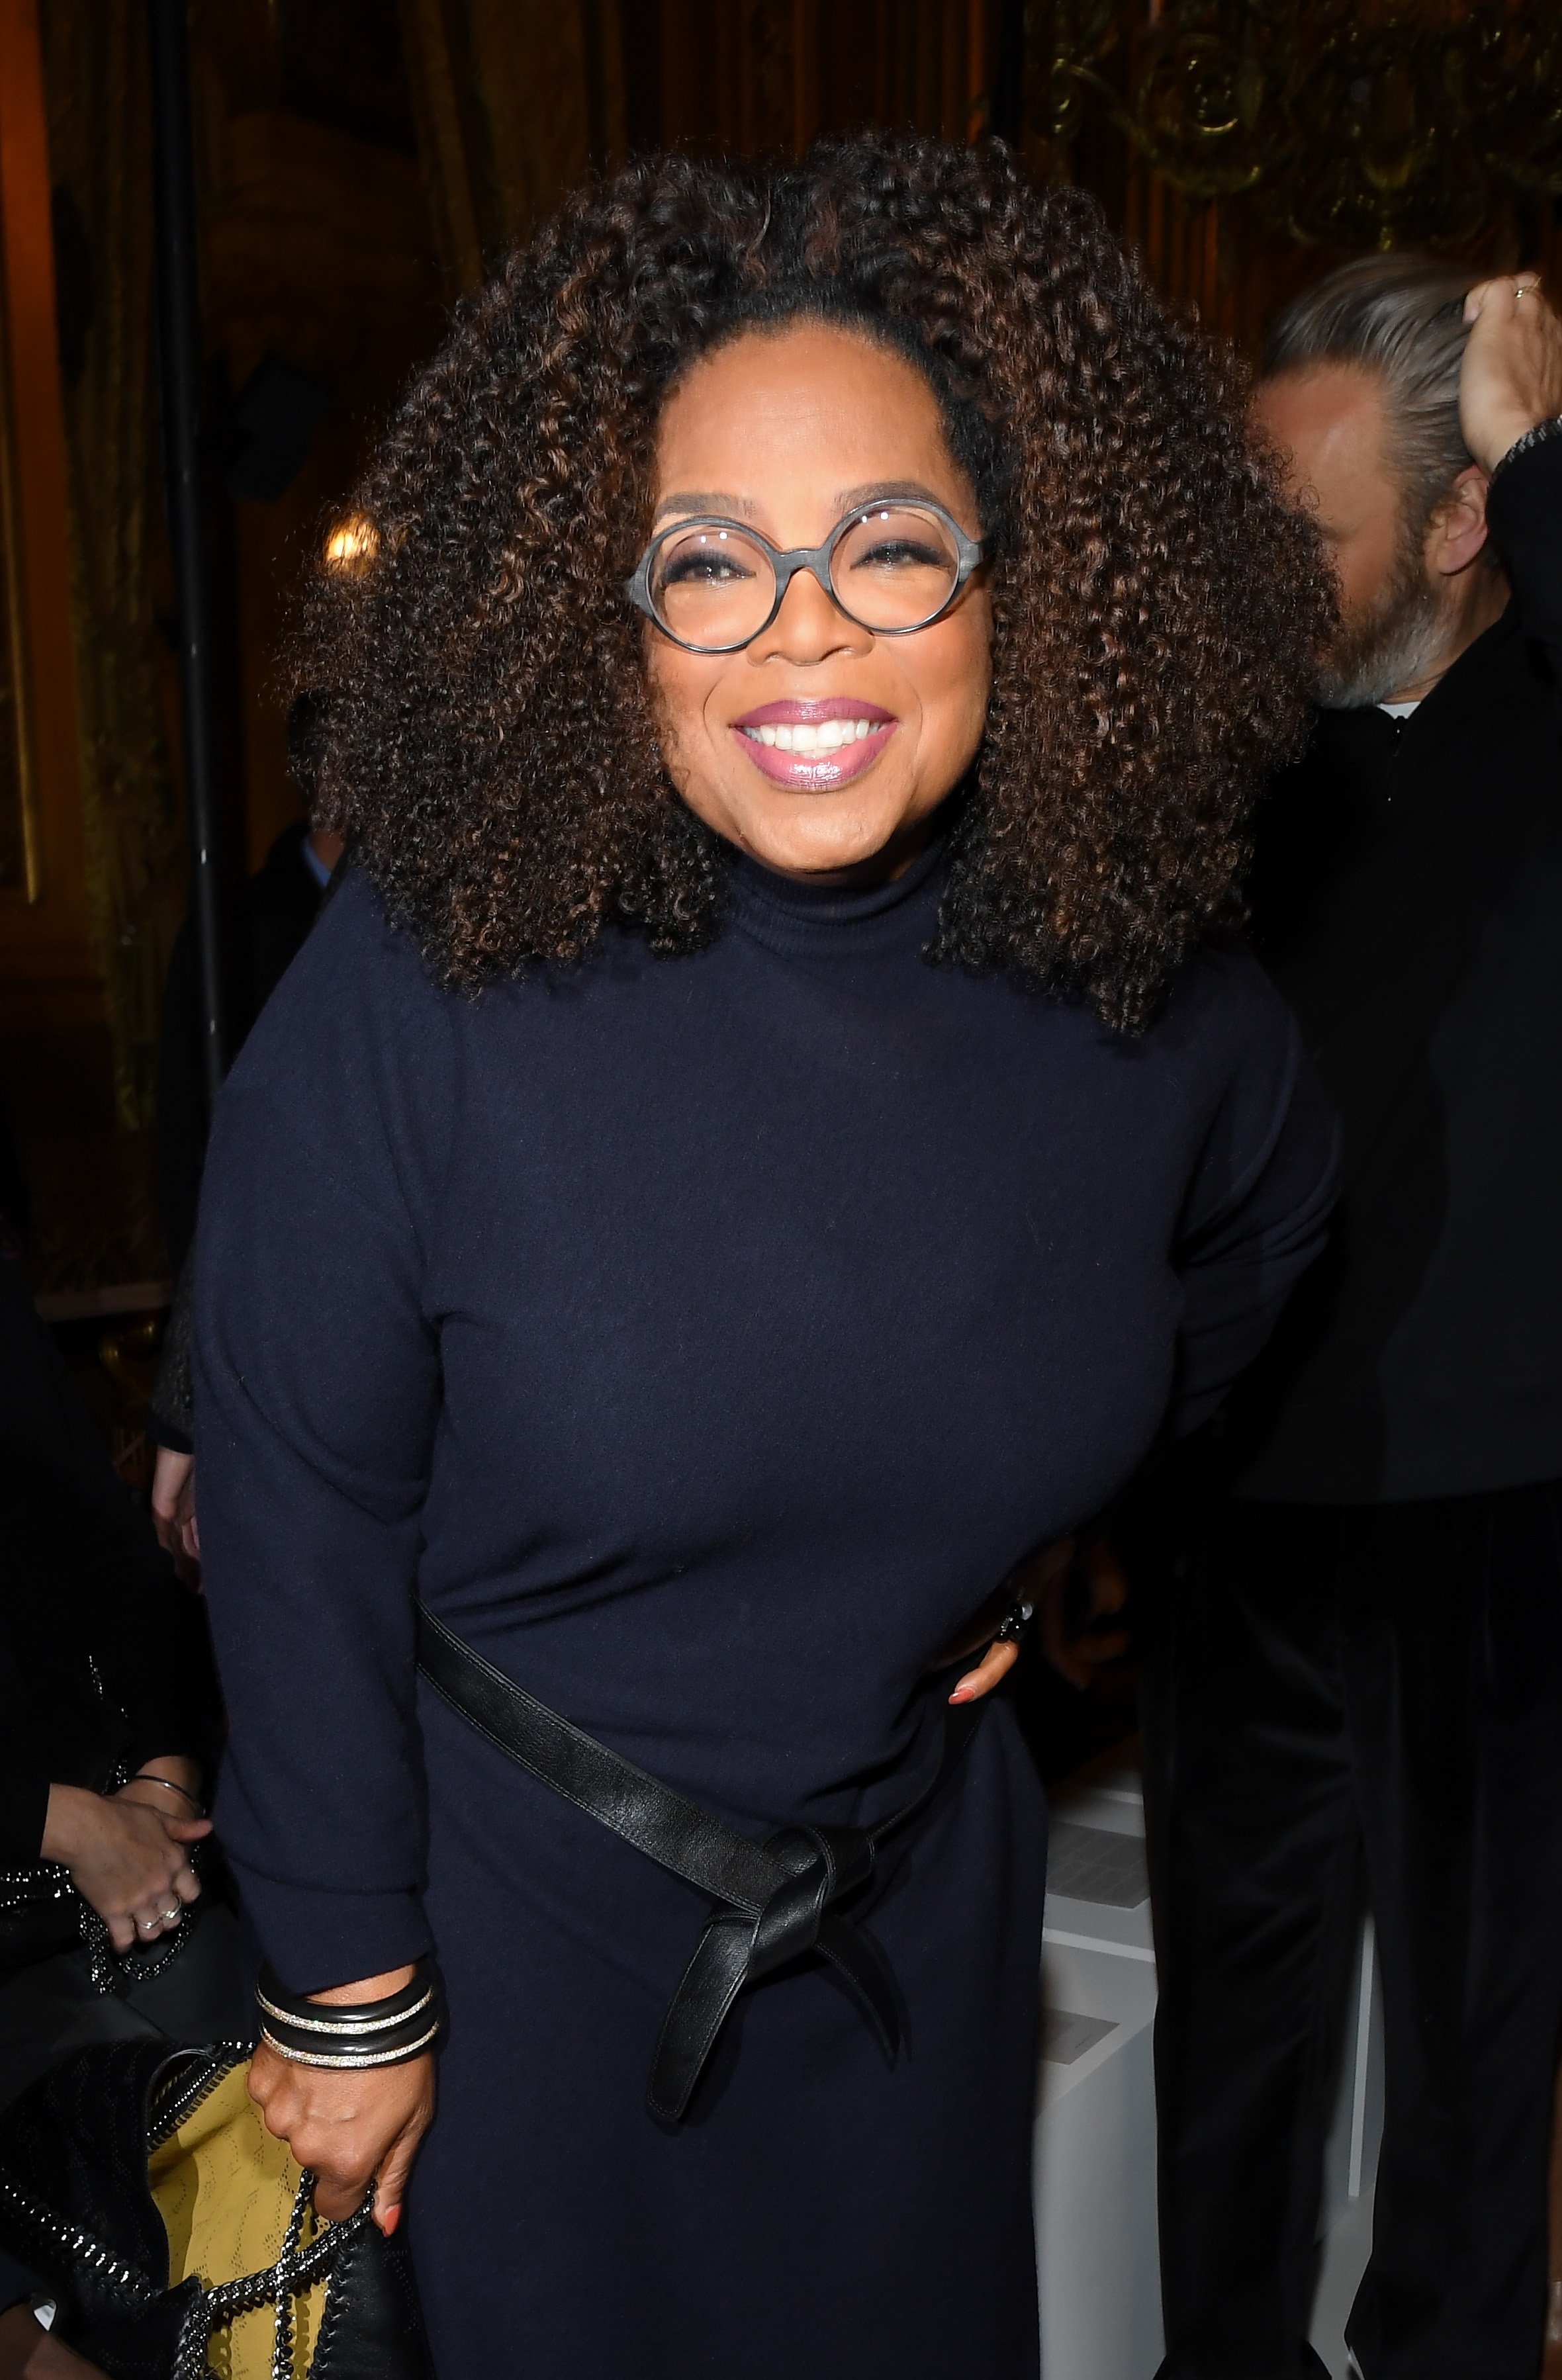 Oprah Winfrey, 4. März, 2019 in Paris, Frankreich | Quelle: Getty Images